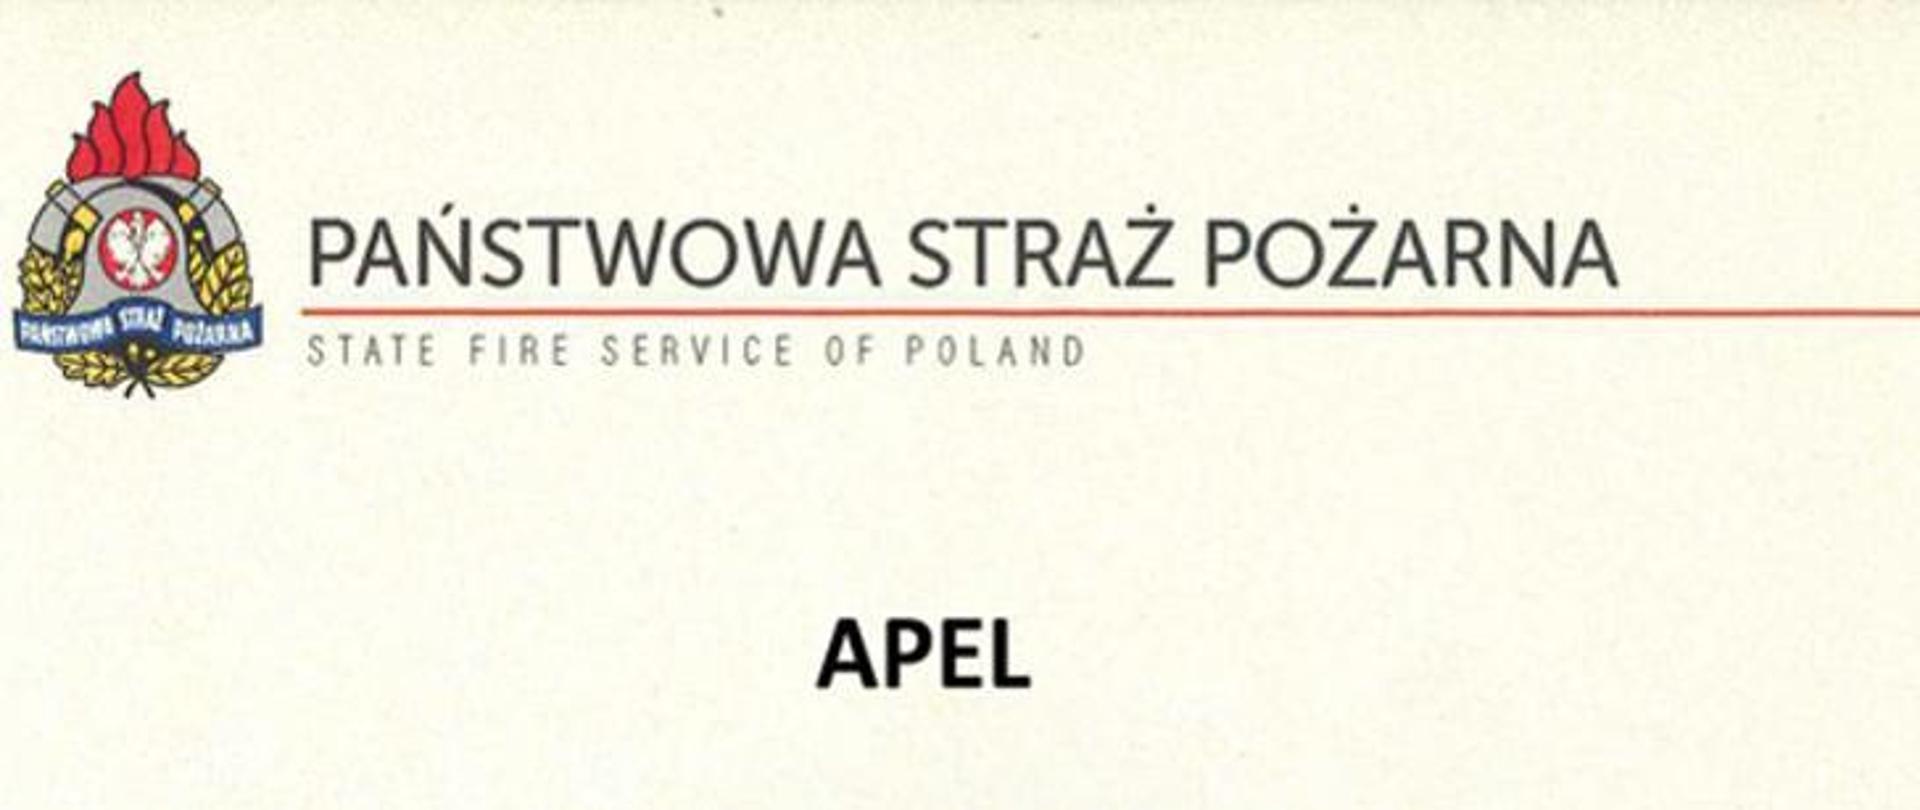 Napis Państwowa Straż Pożarna po polsku i angielsku wraz z logiem formacji.